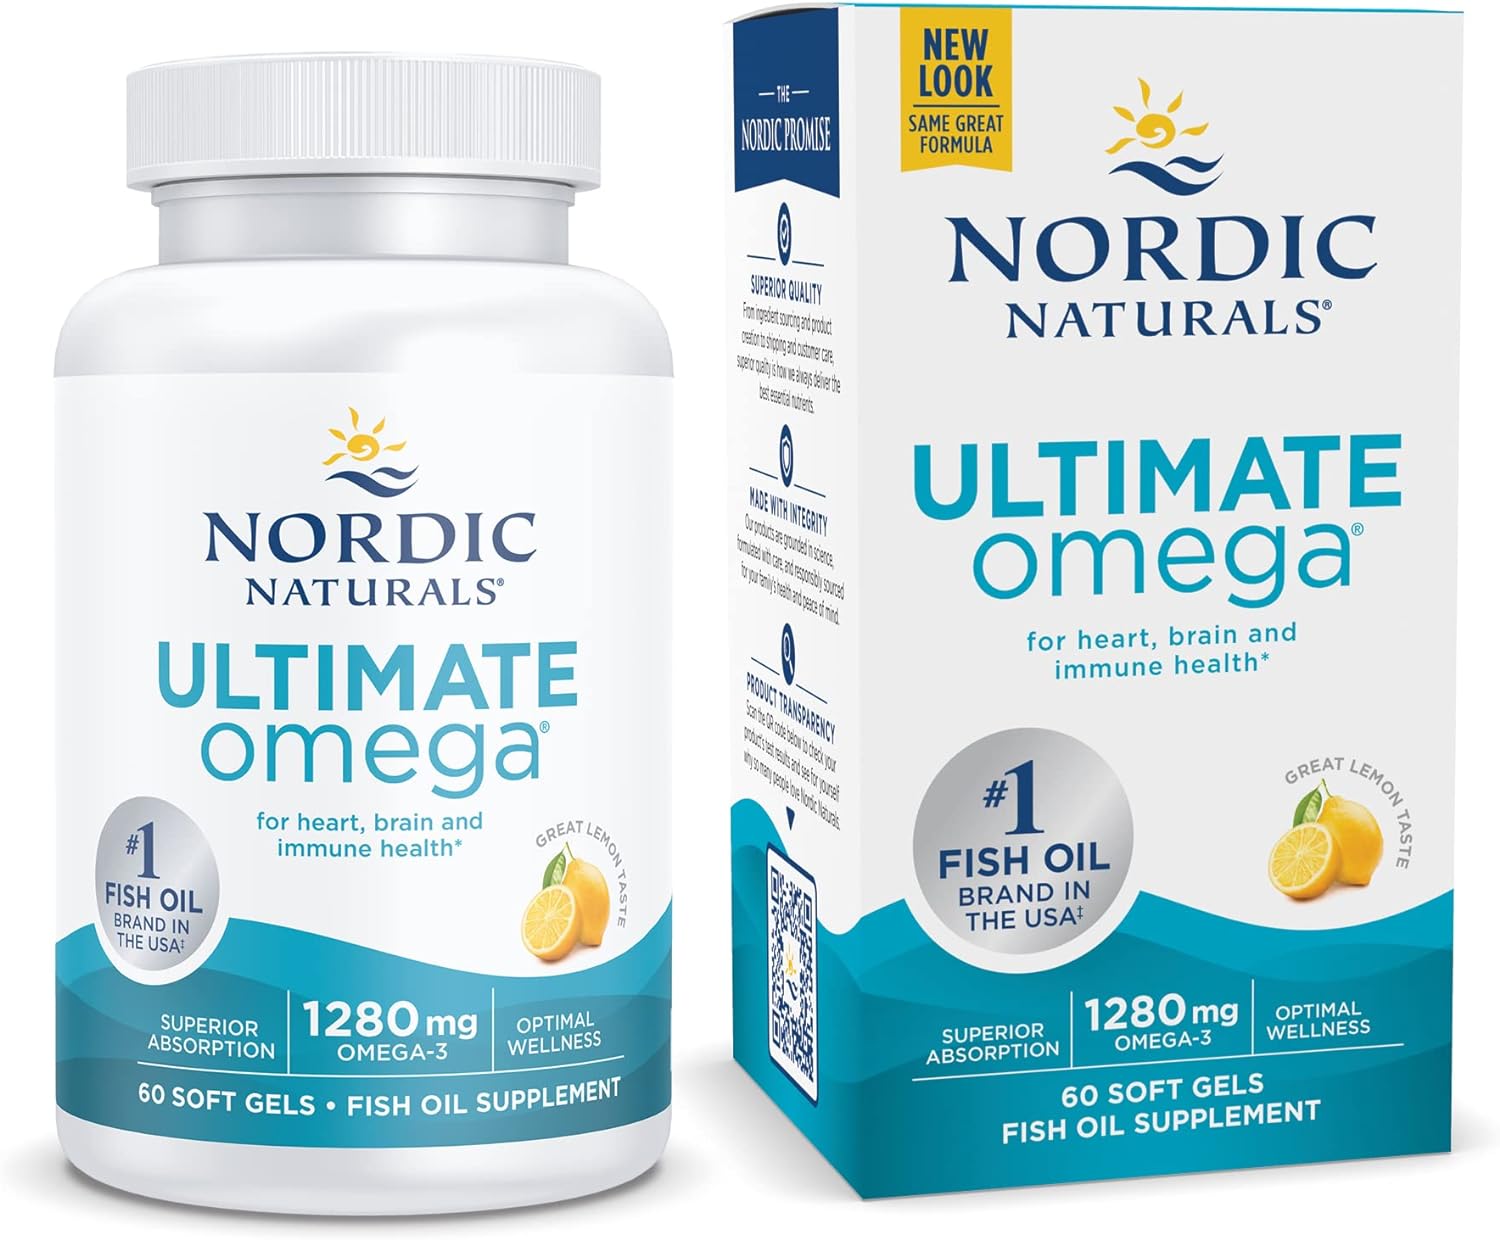 Nordic Naturals Ultimate Omega, Lemon Flavor - 60 Soft Gels - 1280 mg Omega-3 - High-Potency Omega-3